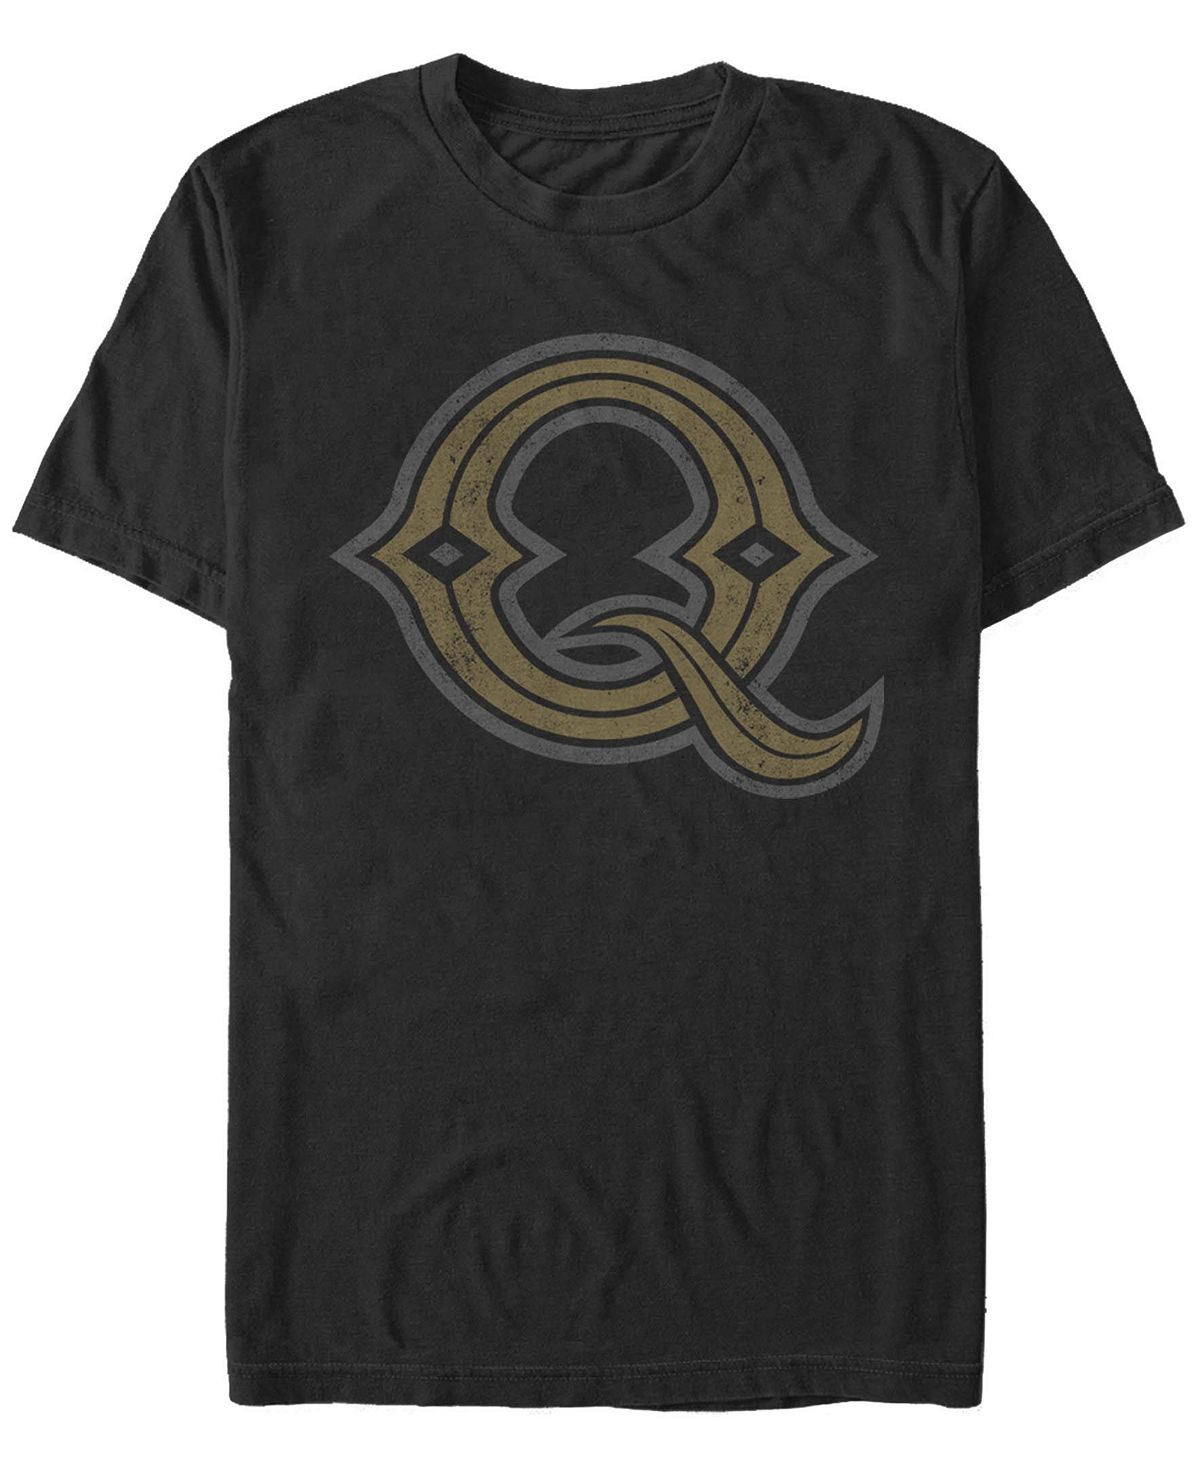 Мужская футболка с круглым вырезом barley q с короткими рукавами Fifth Sun, черный